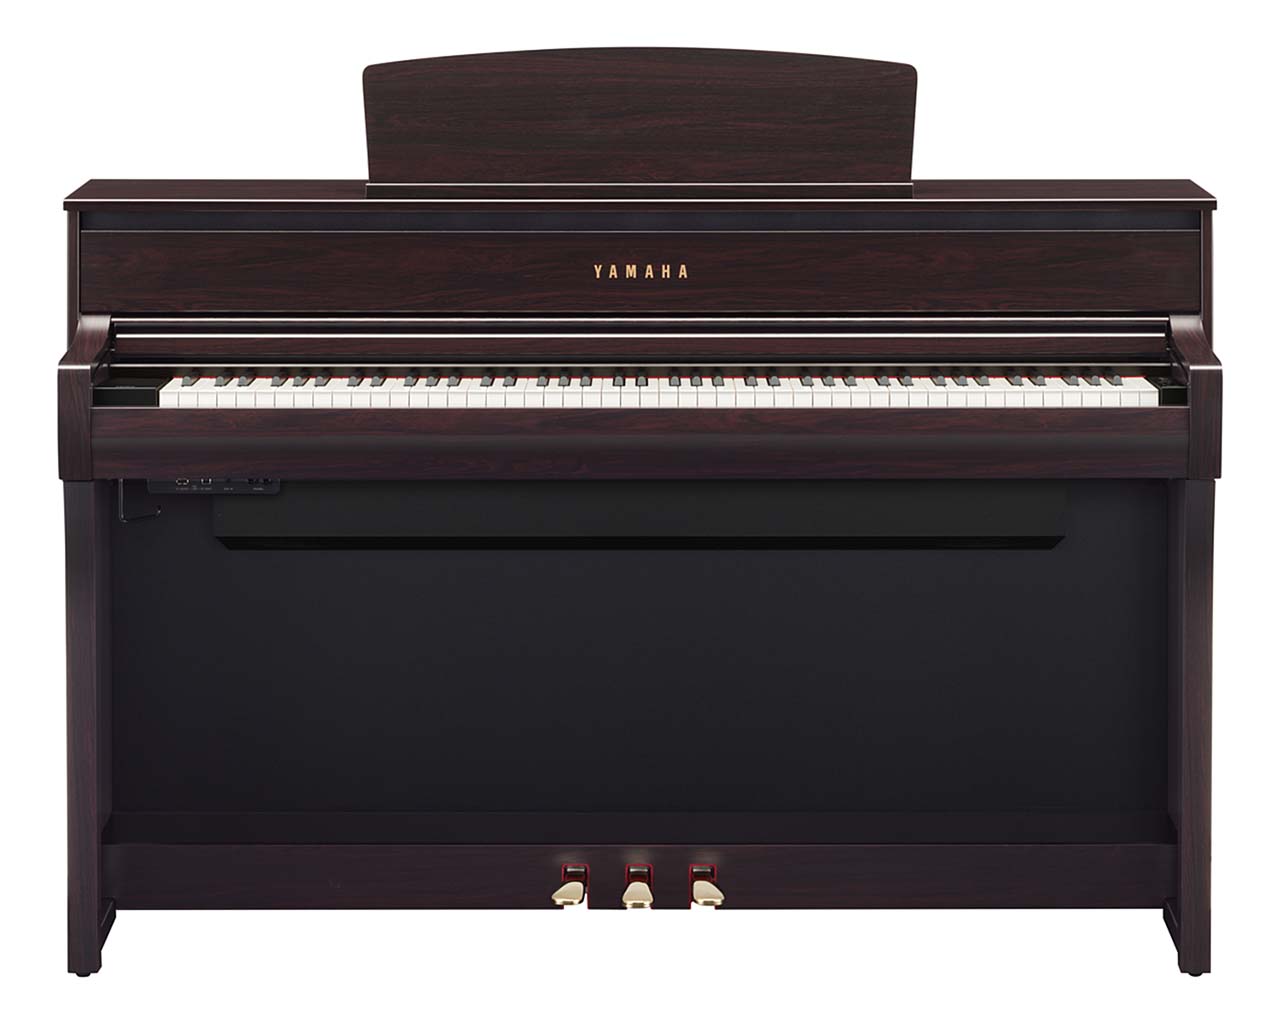 Yamaha-Clavinova-CLP-775-R-Digitalpiano-Rosenholz-Front-Pianohaus-Filipski